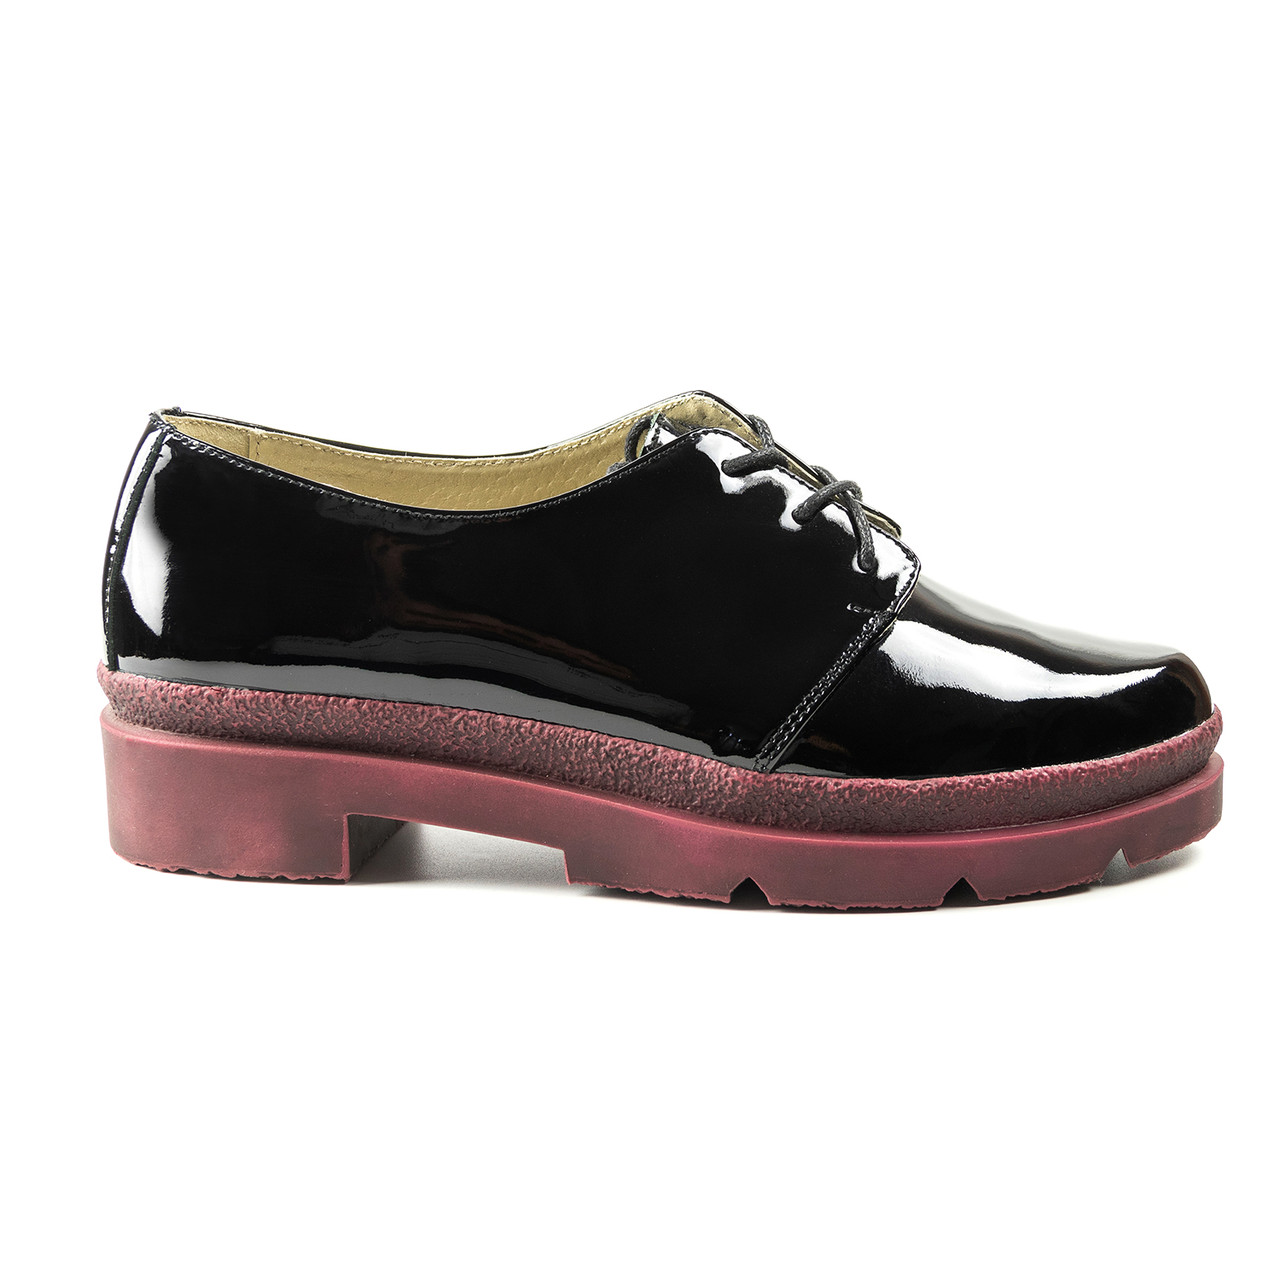 Лаковані чорні туфлі жіночі woman's heel 38р шкіряні на шнурівці, фото 1